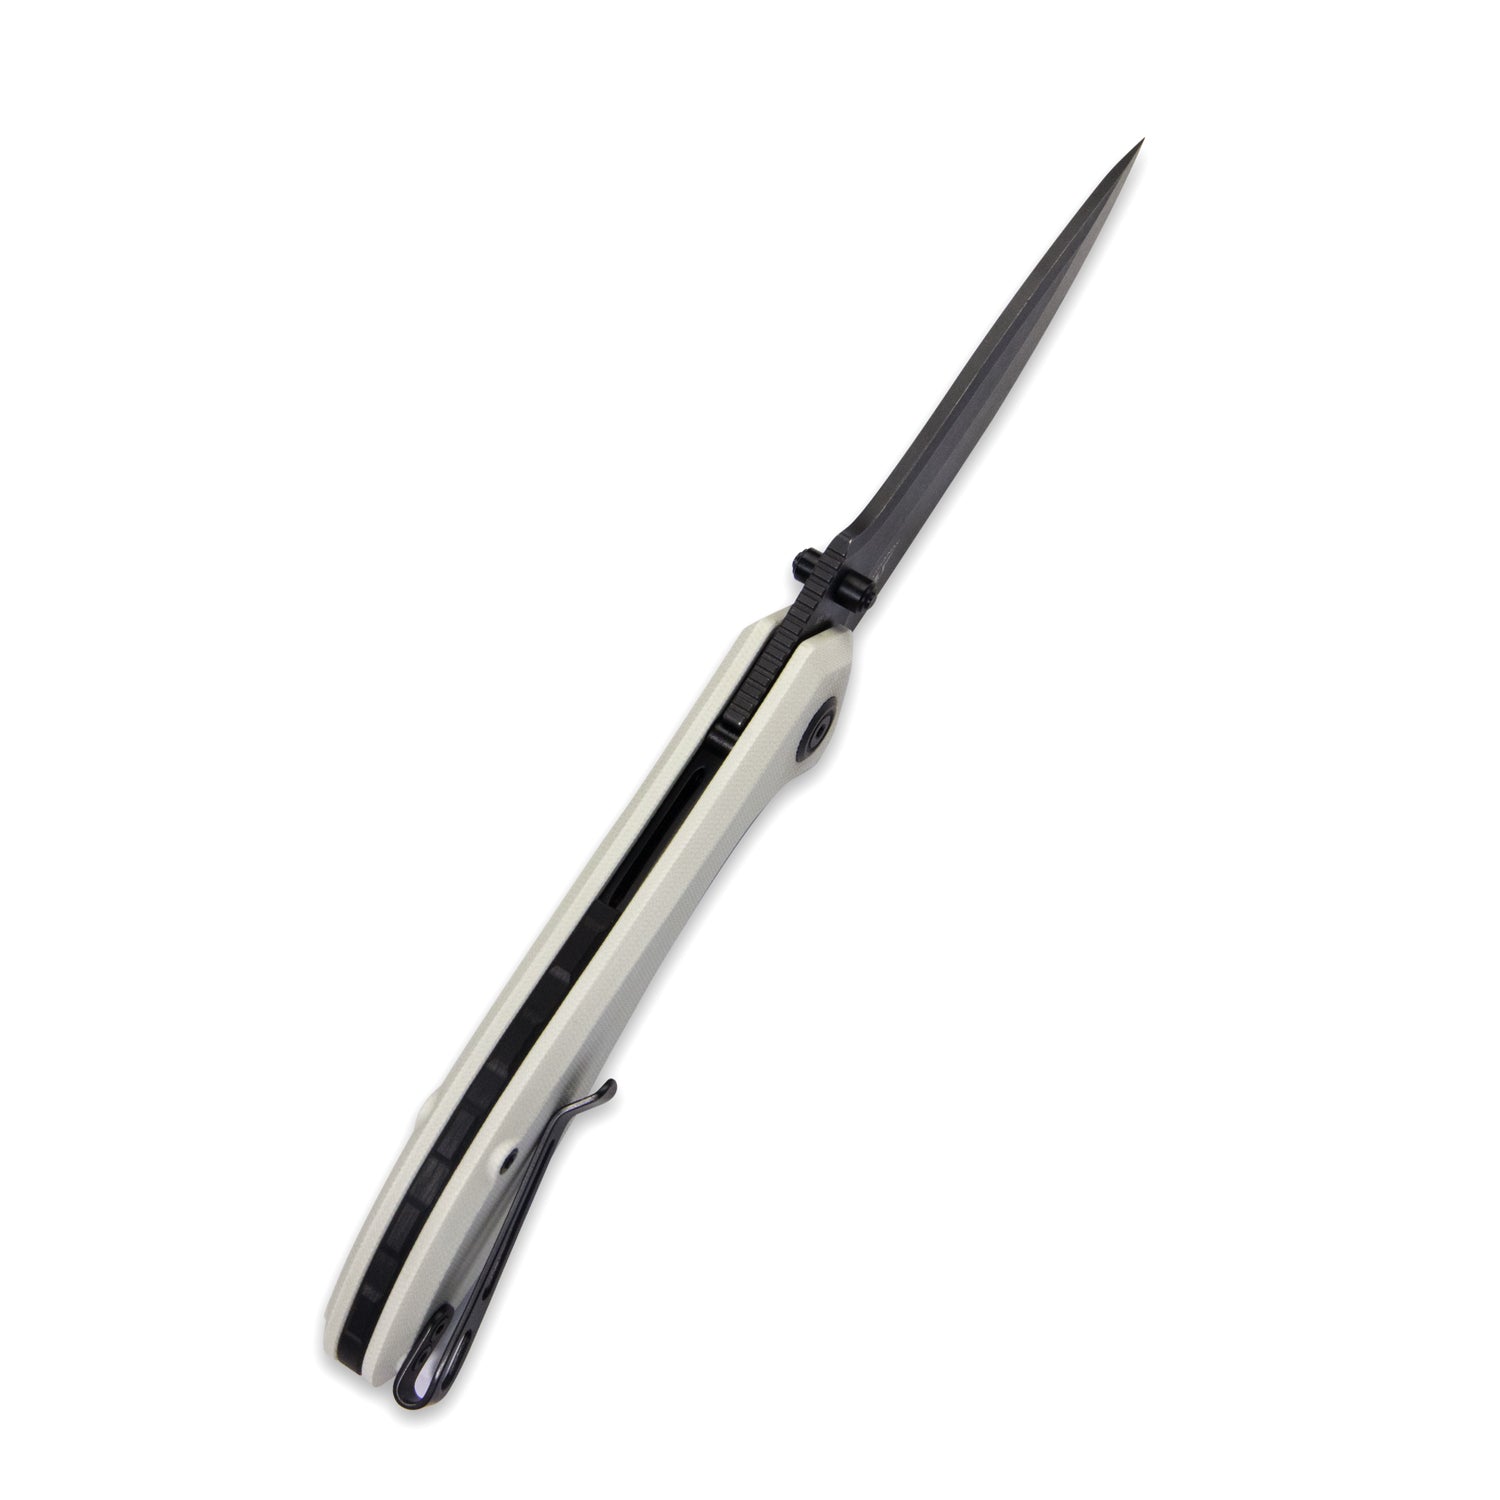 Kubey Ruckus Liner Lock Folding Knife Ivory G10 Handle 3.31" Blackwashed AUS-10 KU314D